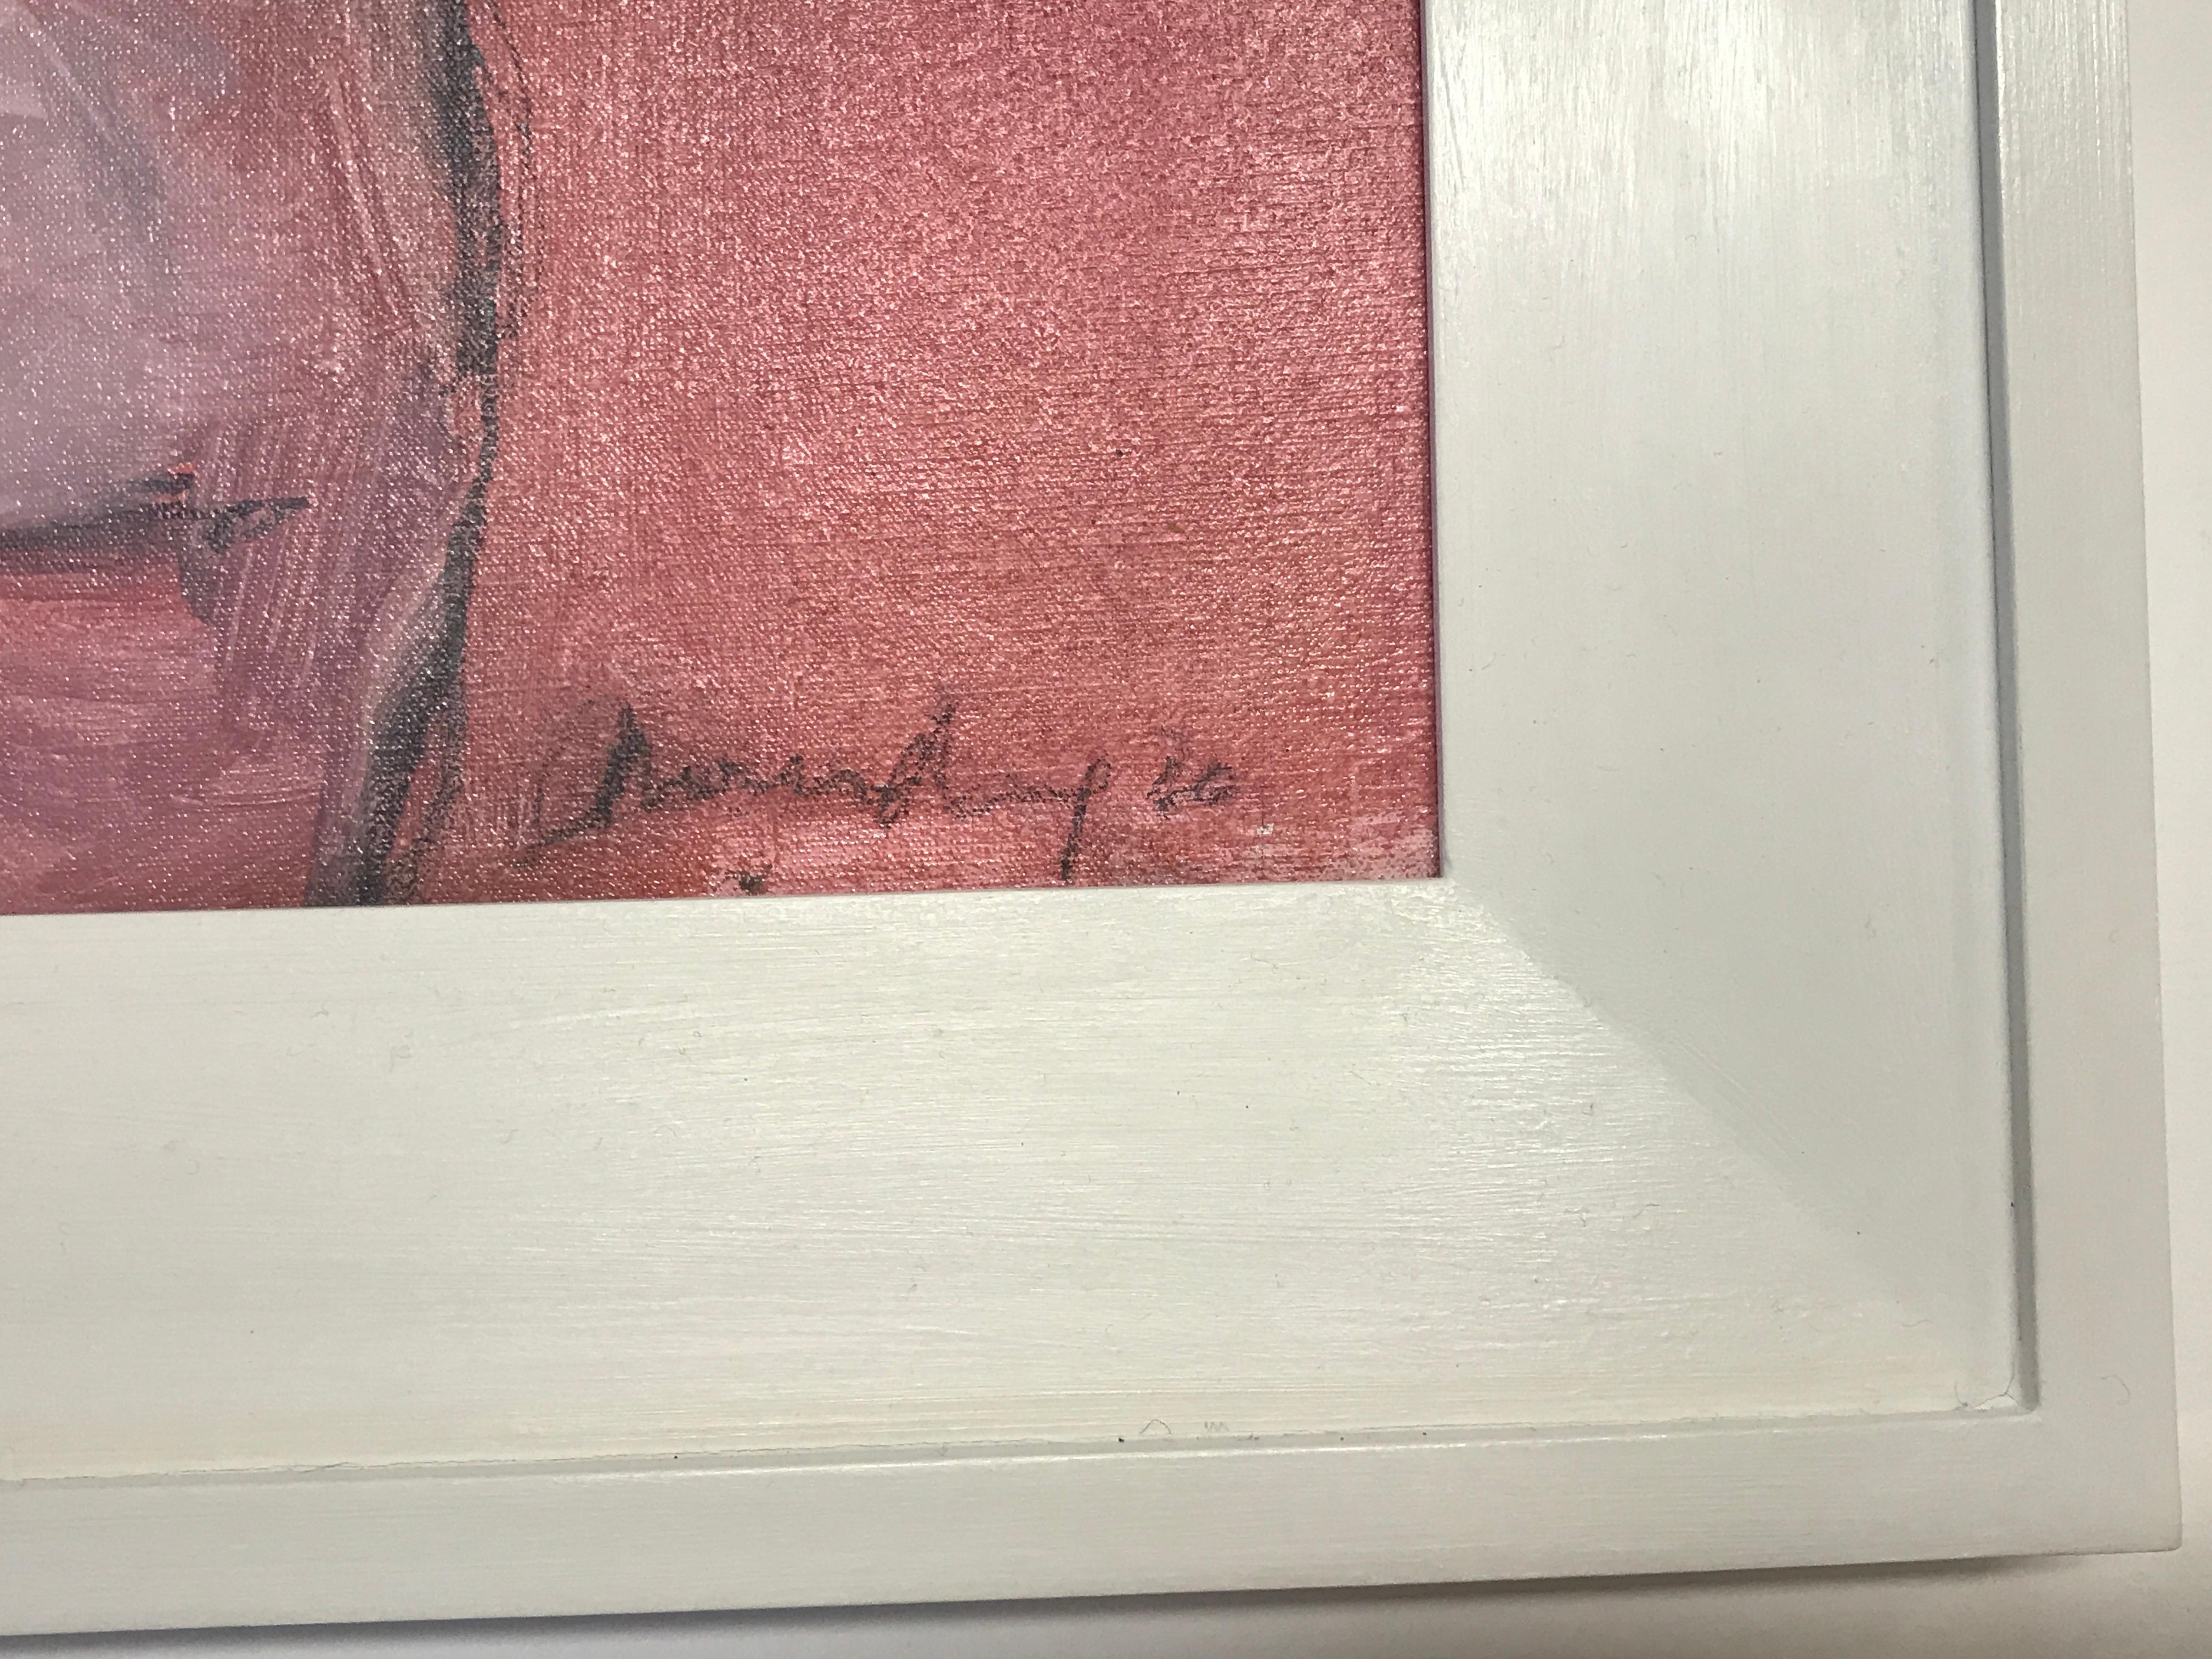 Akt in Rose von Gabrielle Moulding [2020]

Dieses Gemälde wurde in meinem Studio nach Zeichnungen des Modells angefertigt. Ich liebe es, vom lebenden Modell zu zeichnen und zu malen, um eine Stimmung oder eine Geste einzufangen. In diesem Fall habe